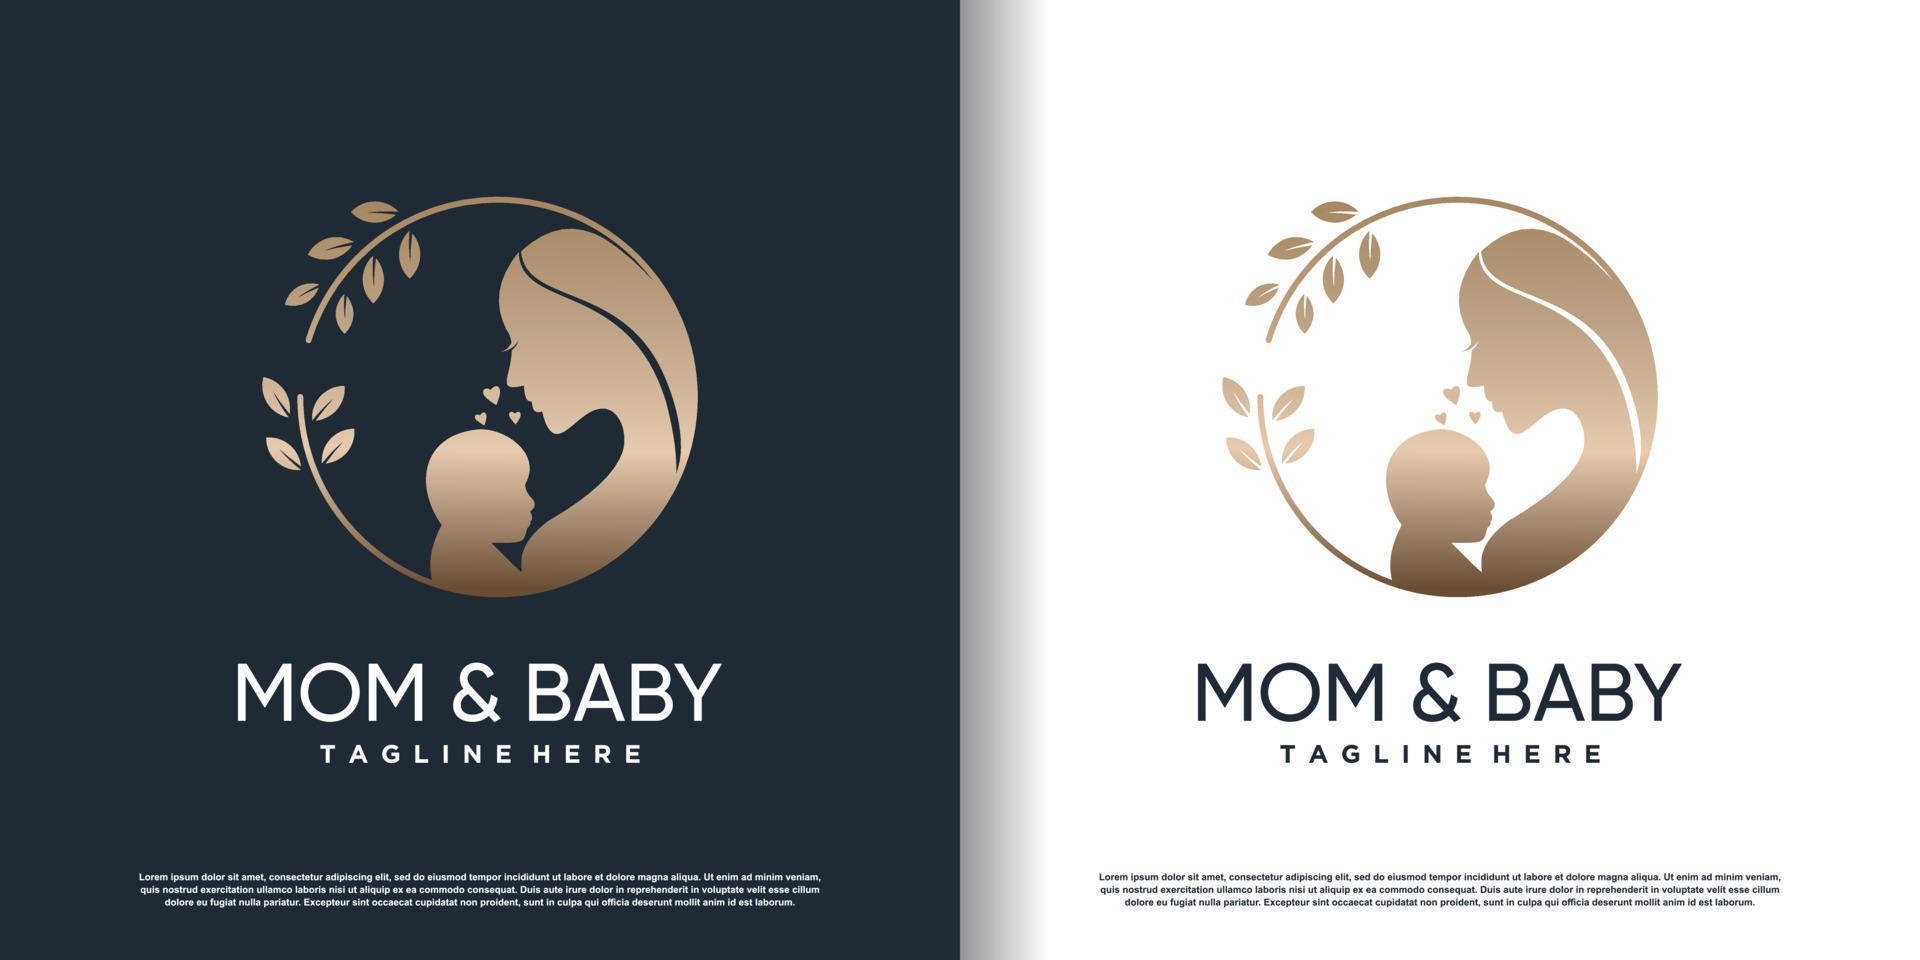 design de logotipo de mãe e bebê com vetor premium de estilo único moderno